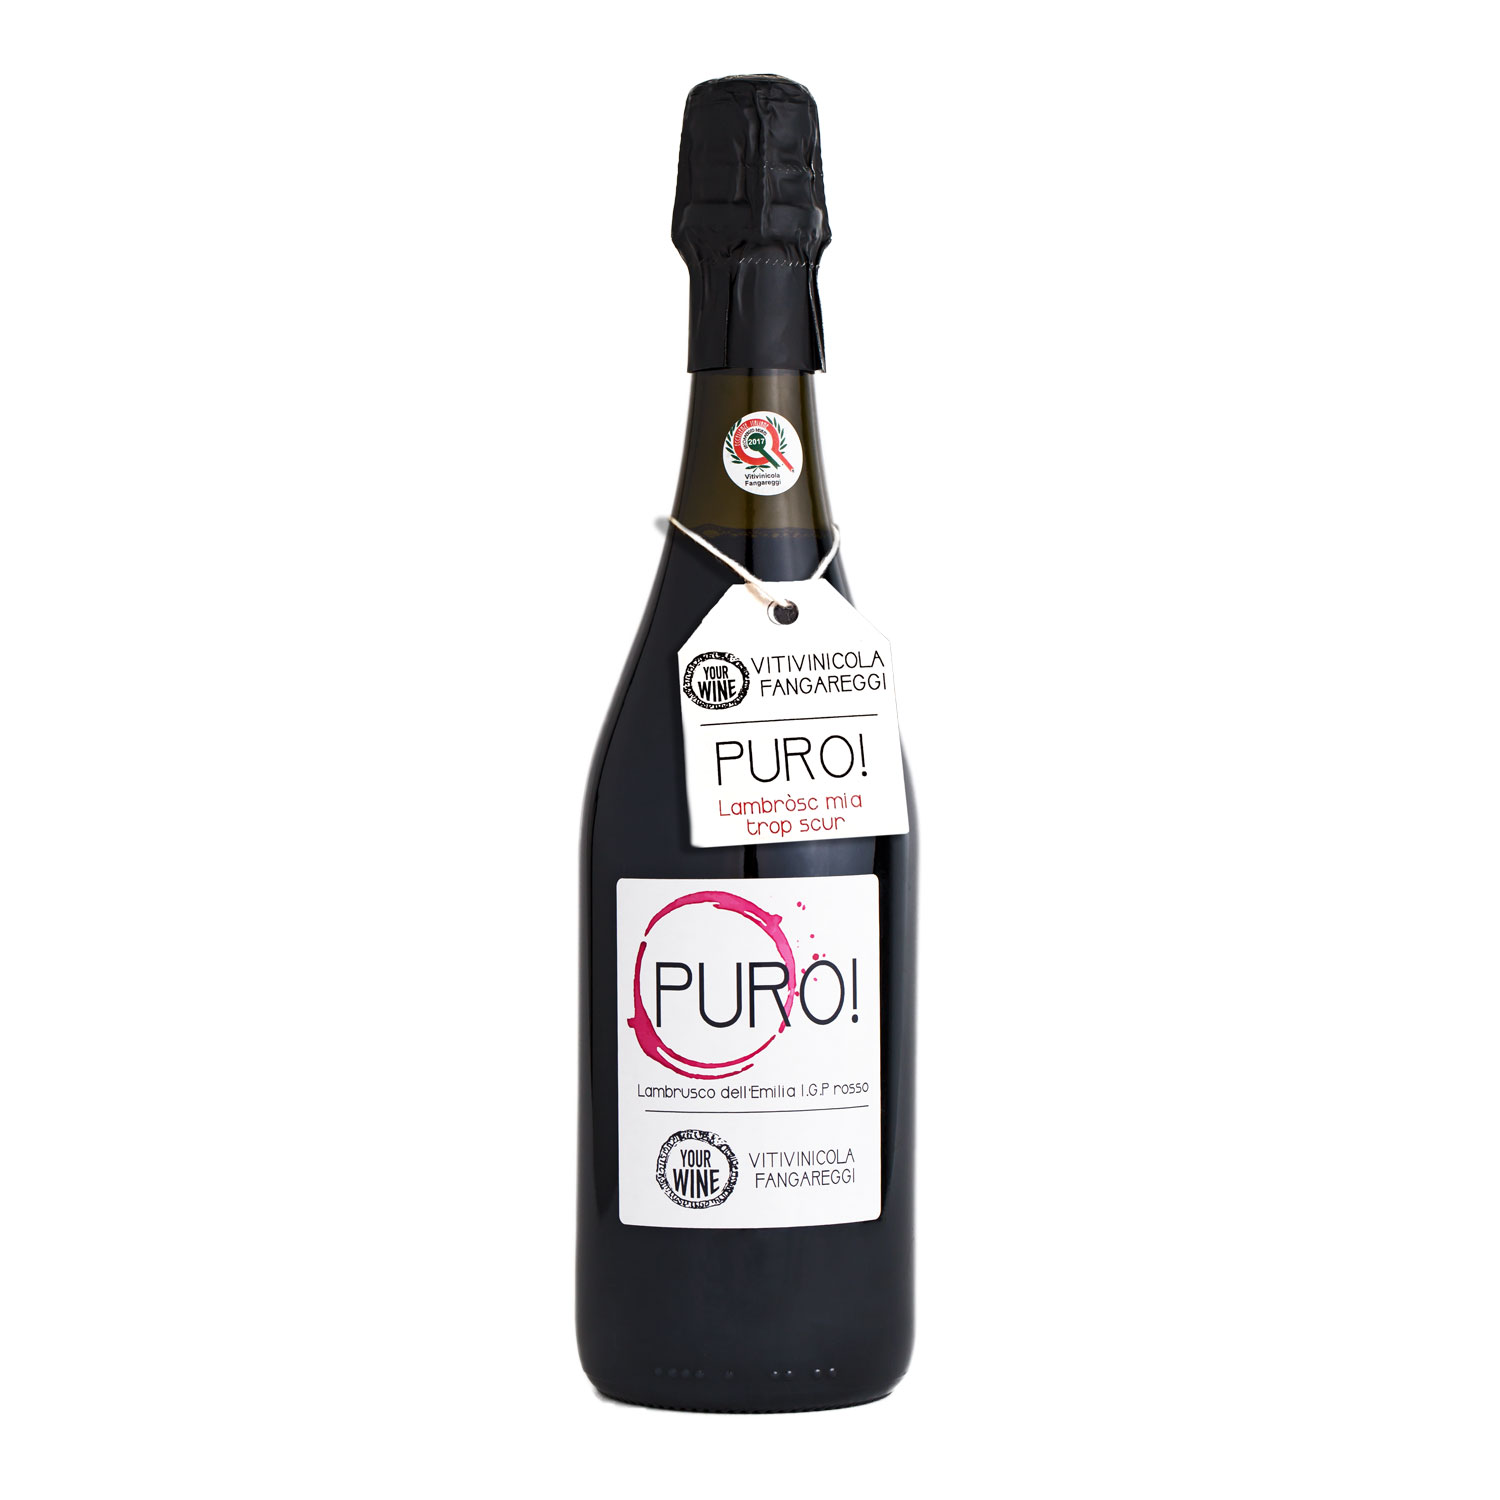 Emilia Lambrusco Rosso IGP “Puro!” - Vitivinicola Fangareggi, Your Wine 